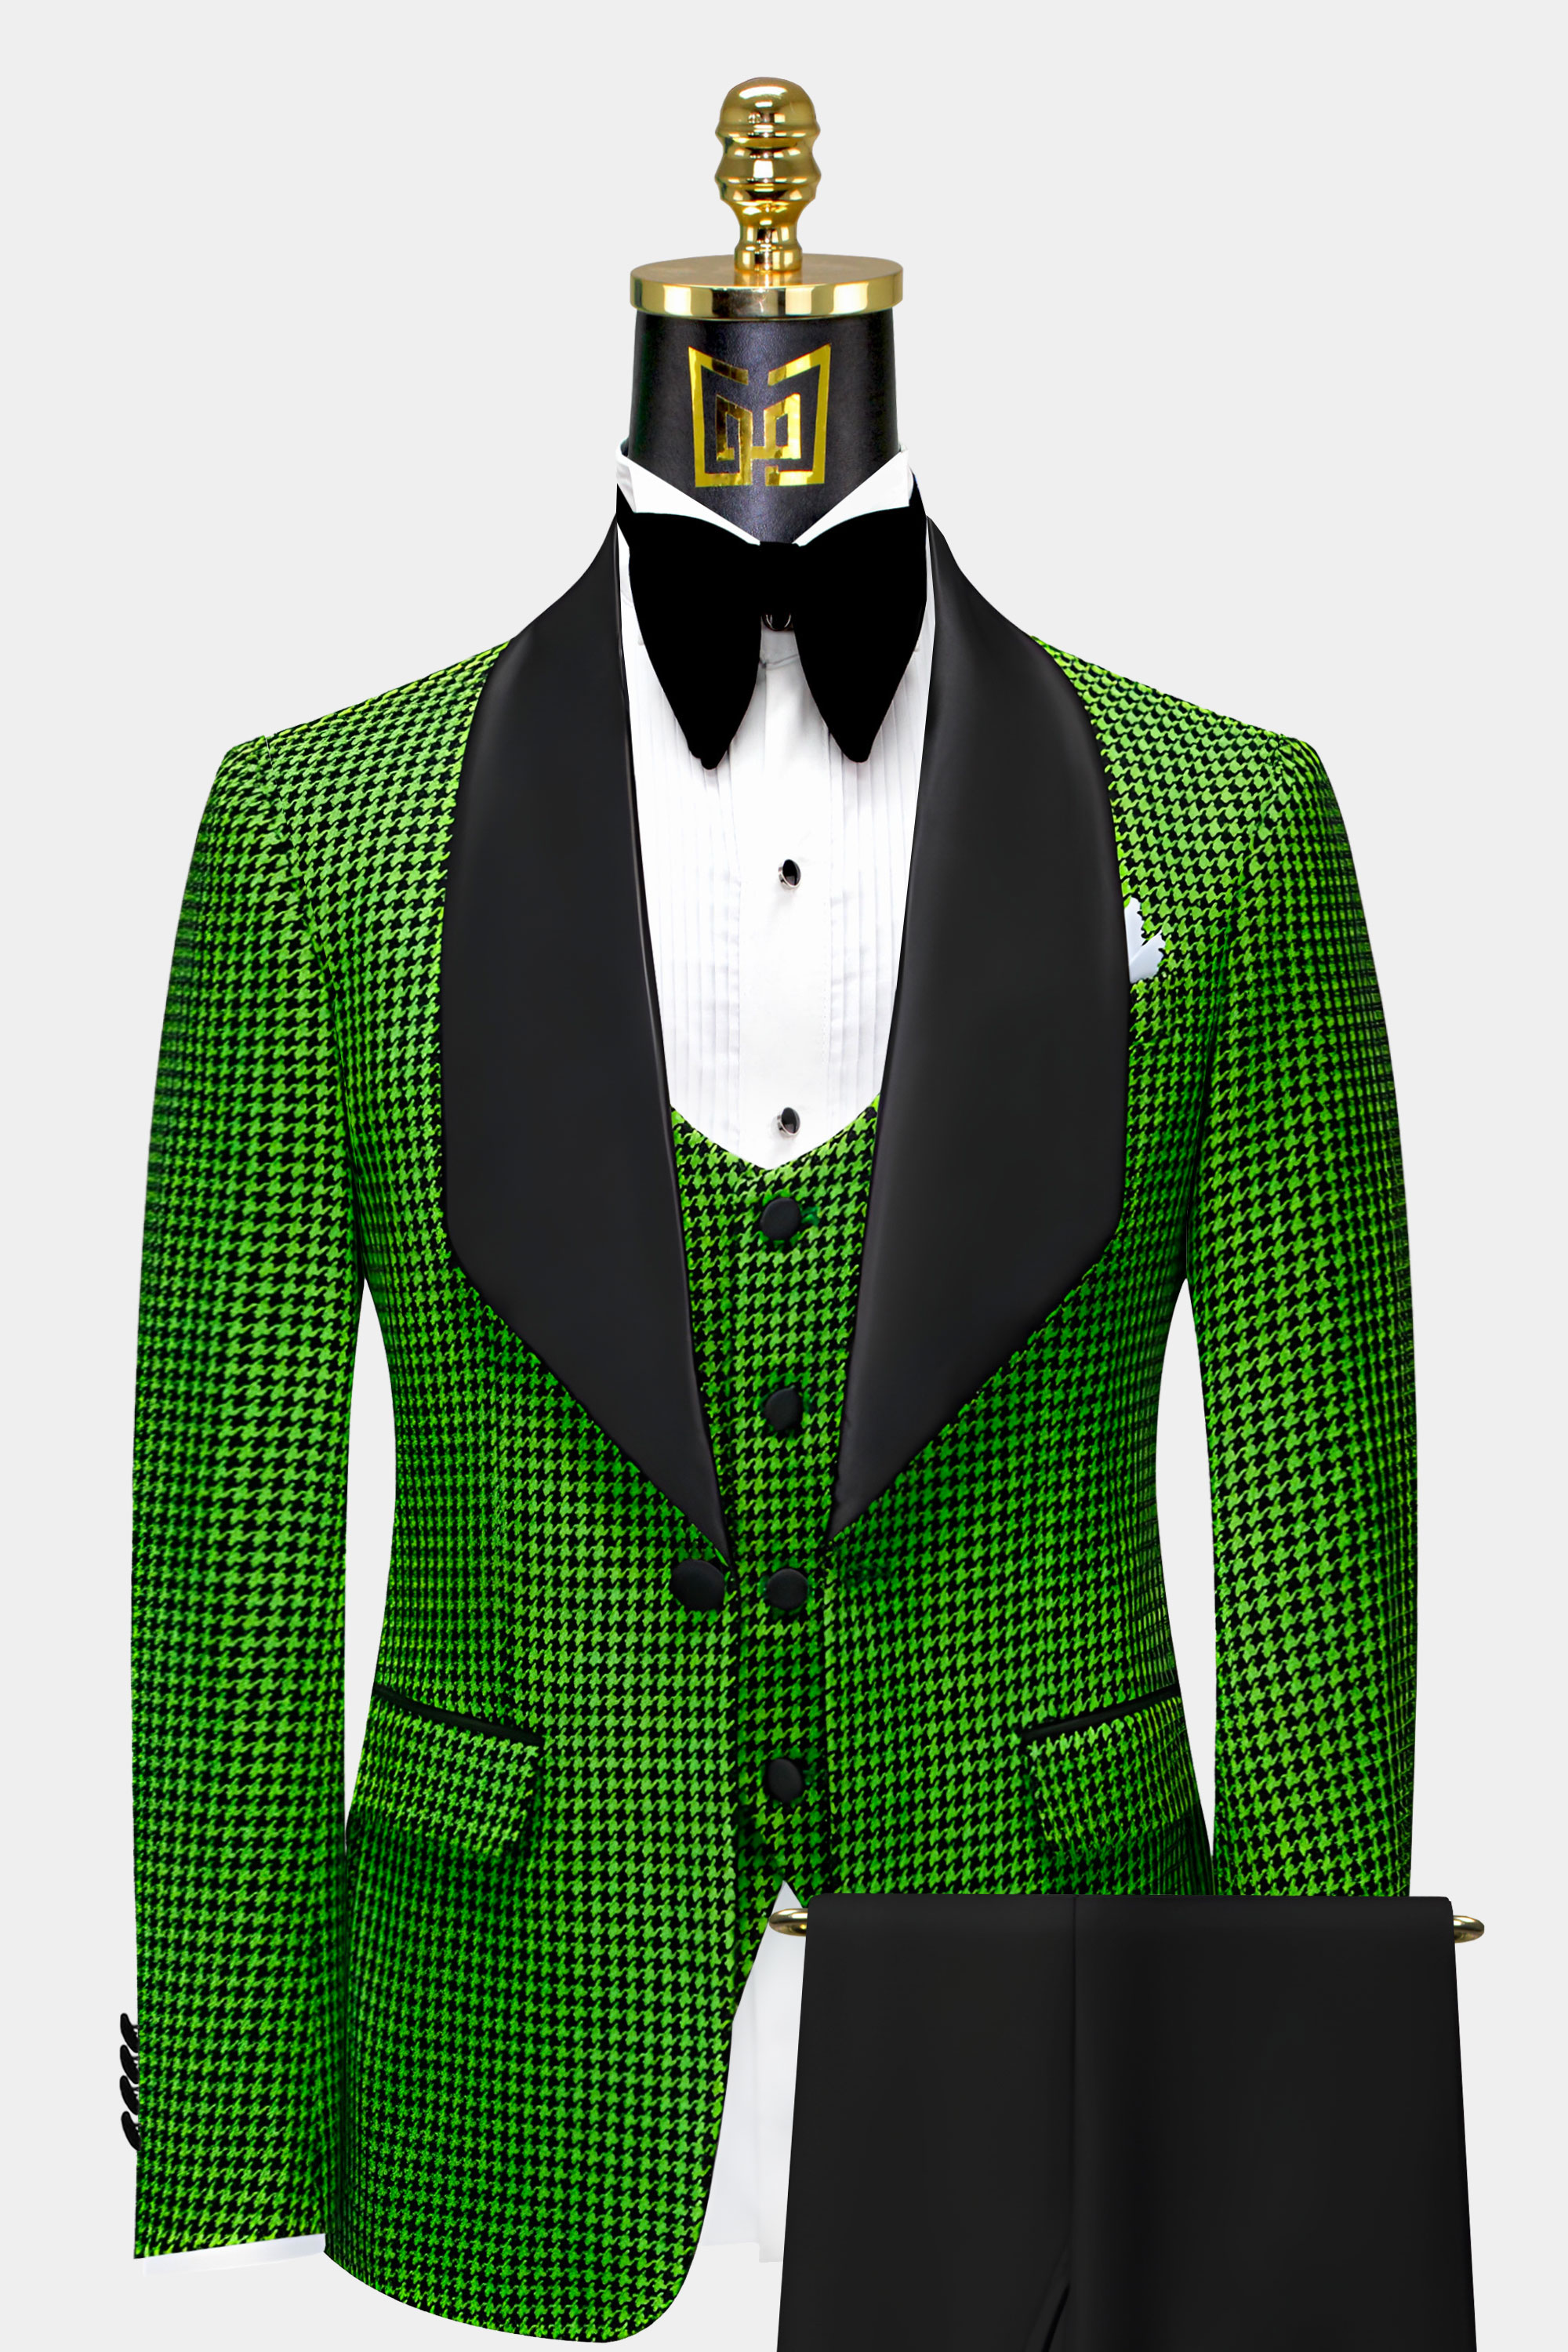 Black-Pant-Green-Houndstooth-Tuxedo-Wedding-Groom-Suit-from-Gentlemansguru.com